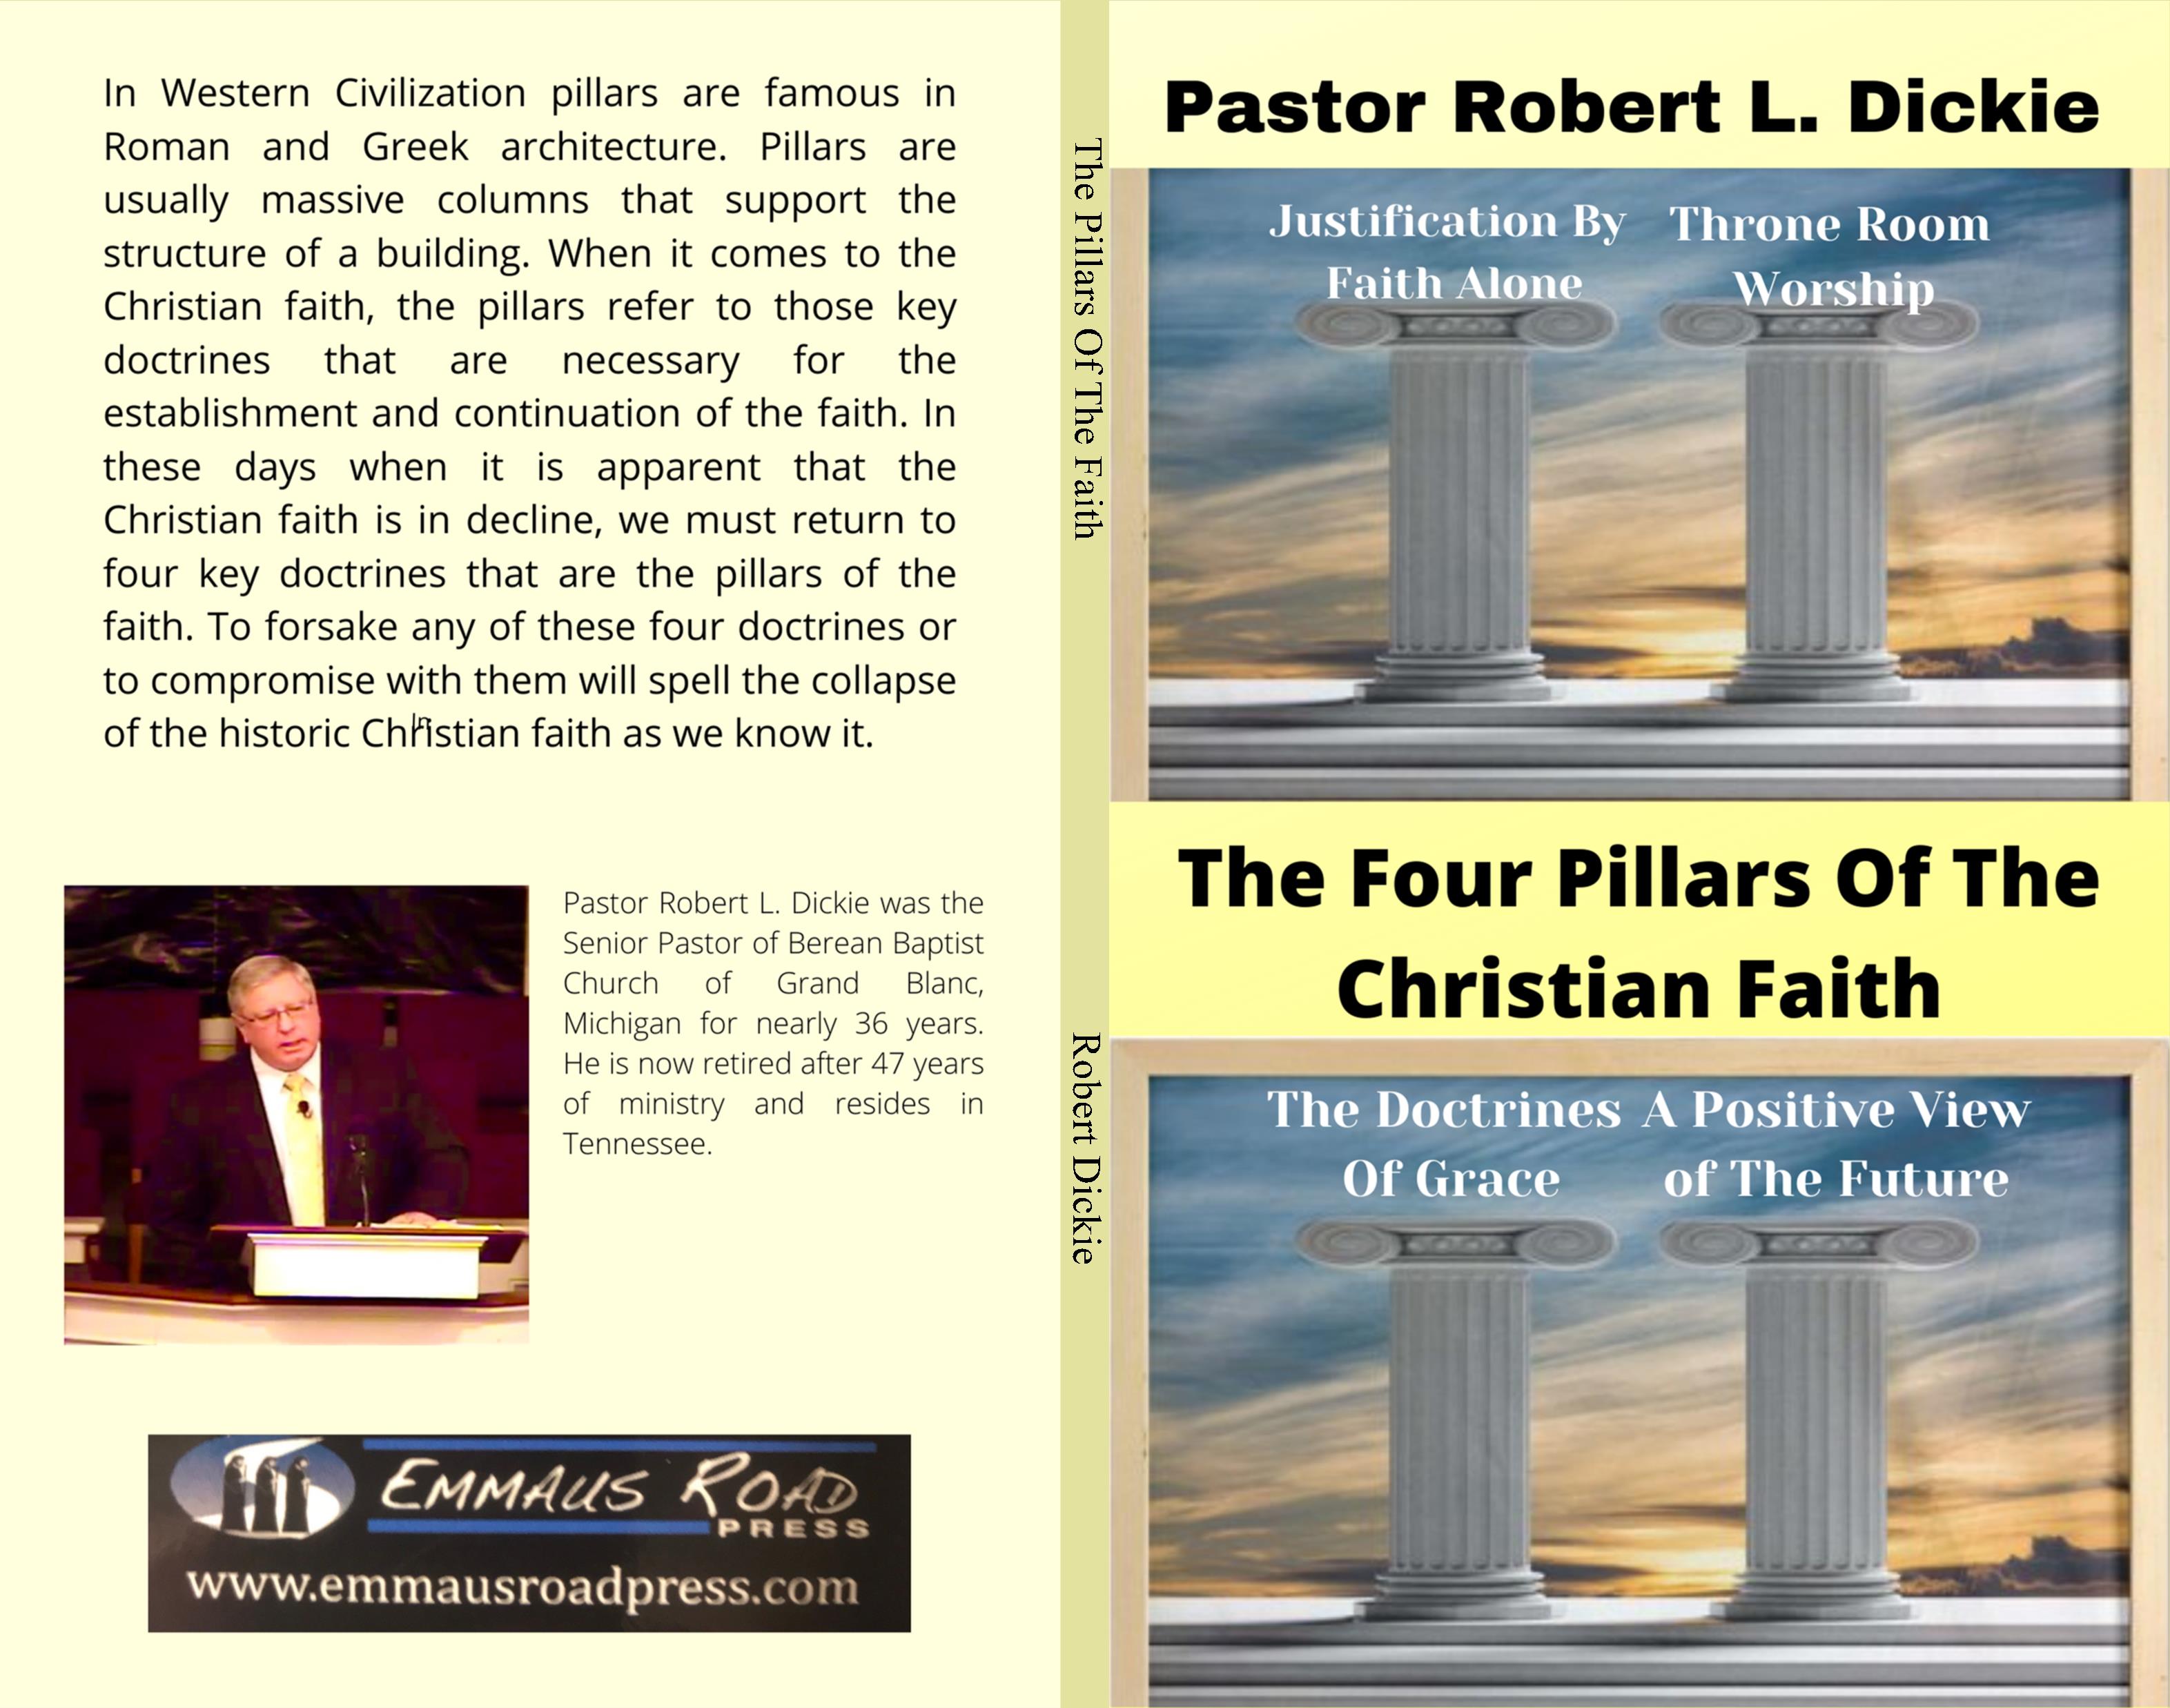 The Four Pillars Of The Christian Faith cover image